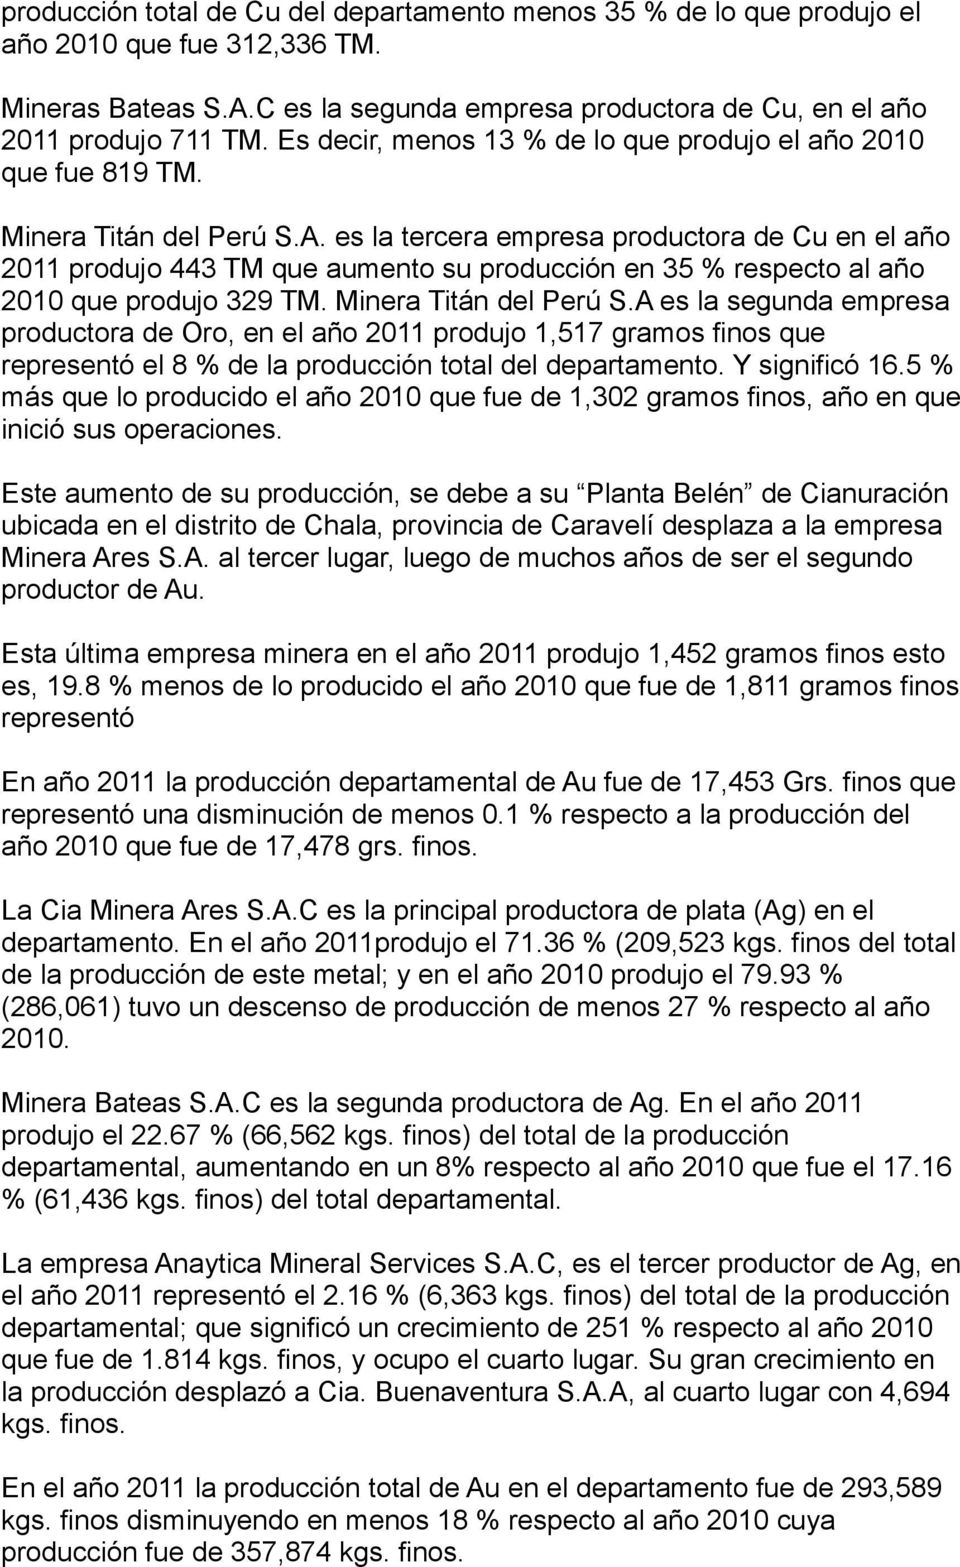 es la tercera empresa productora de Cu en el año 2011 produjo 443 TM que aumento su producción en 35 % respecto al año 2010 que produjo 329 TM. Minera Titán del Perú S.